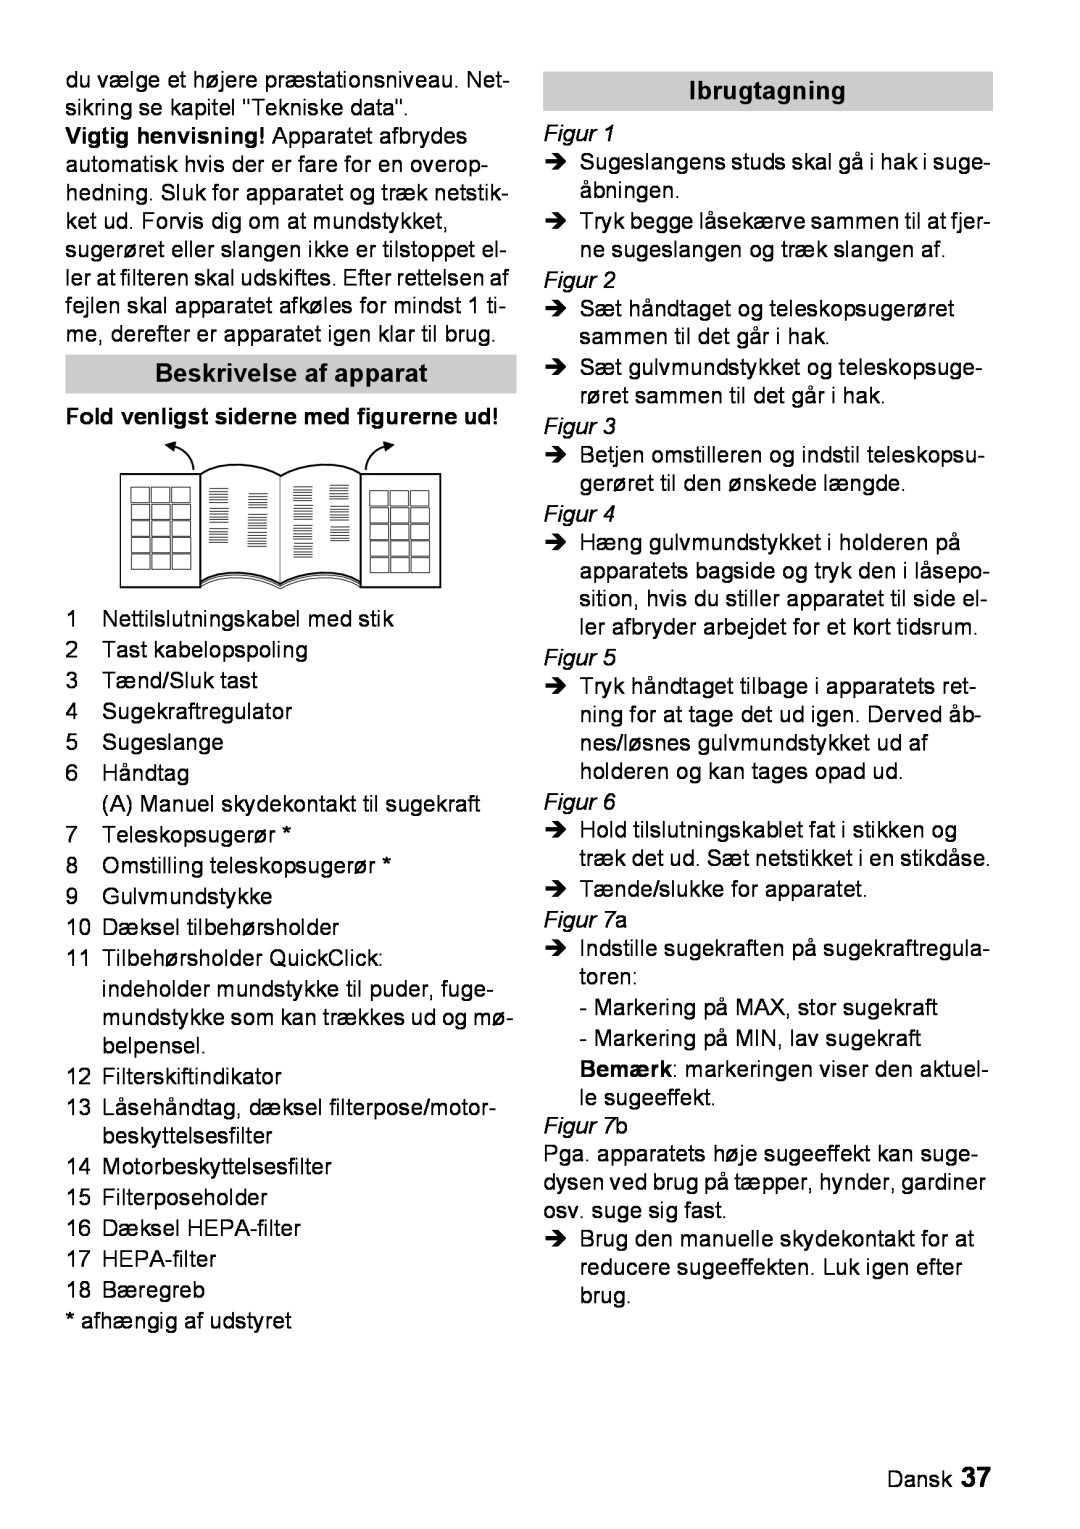 Karcher VC 6200 manual Beskrivelse af apparat, Ibrugtagning, Fold venligst siderne med figurerne ud, Figur 7a, Figur 7b 